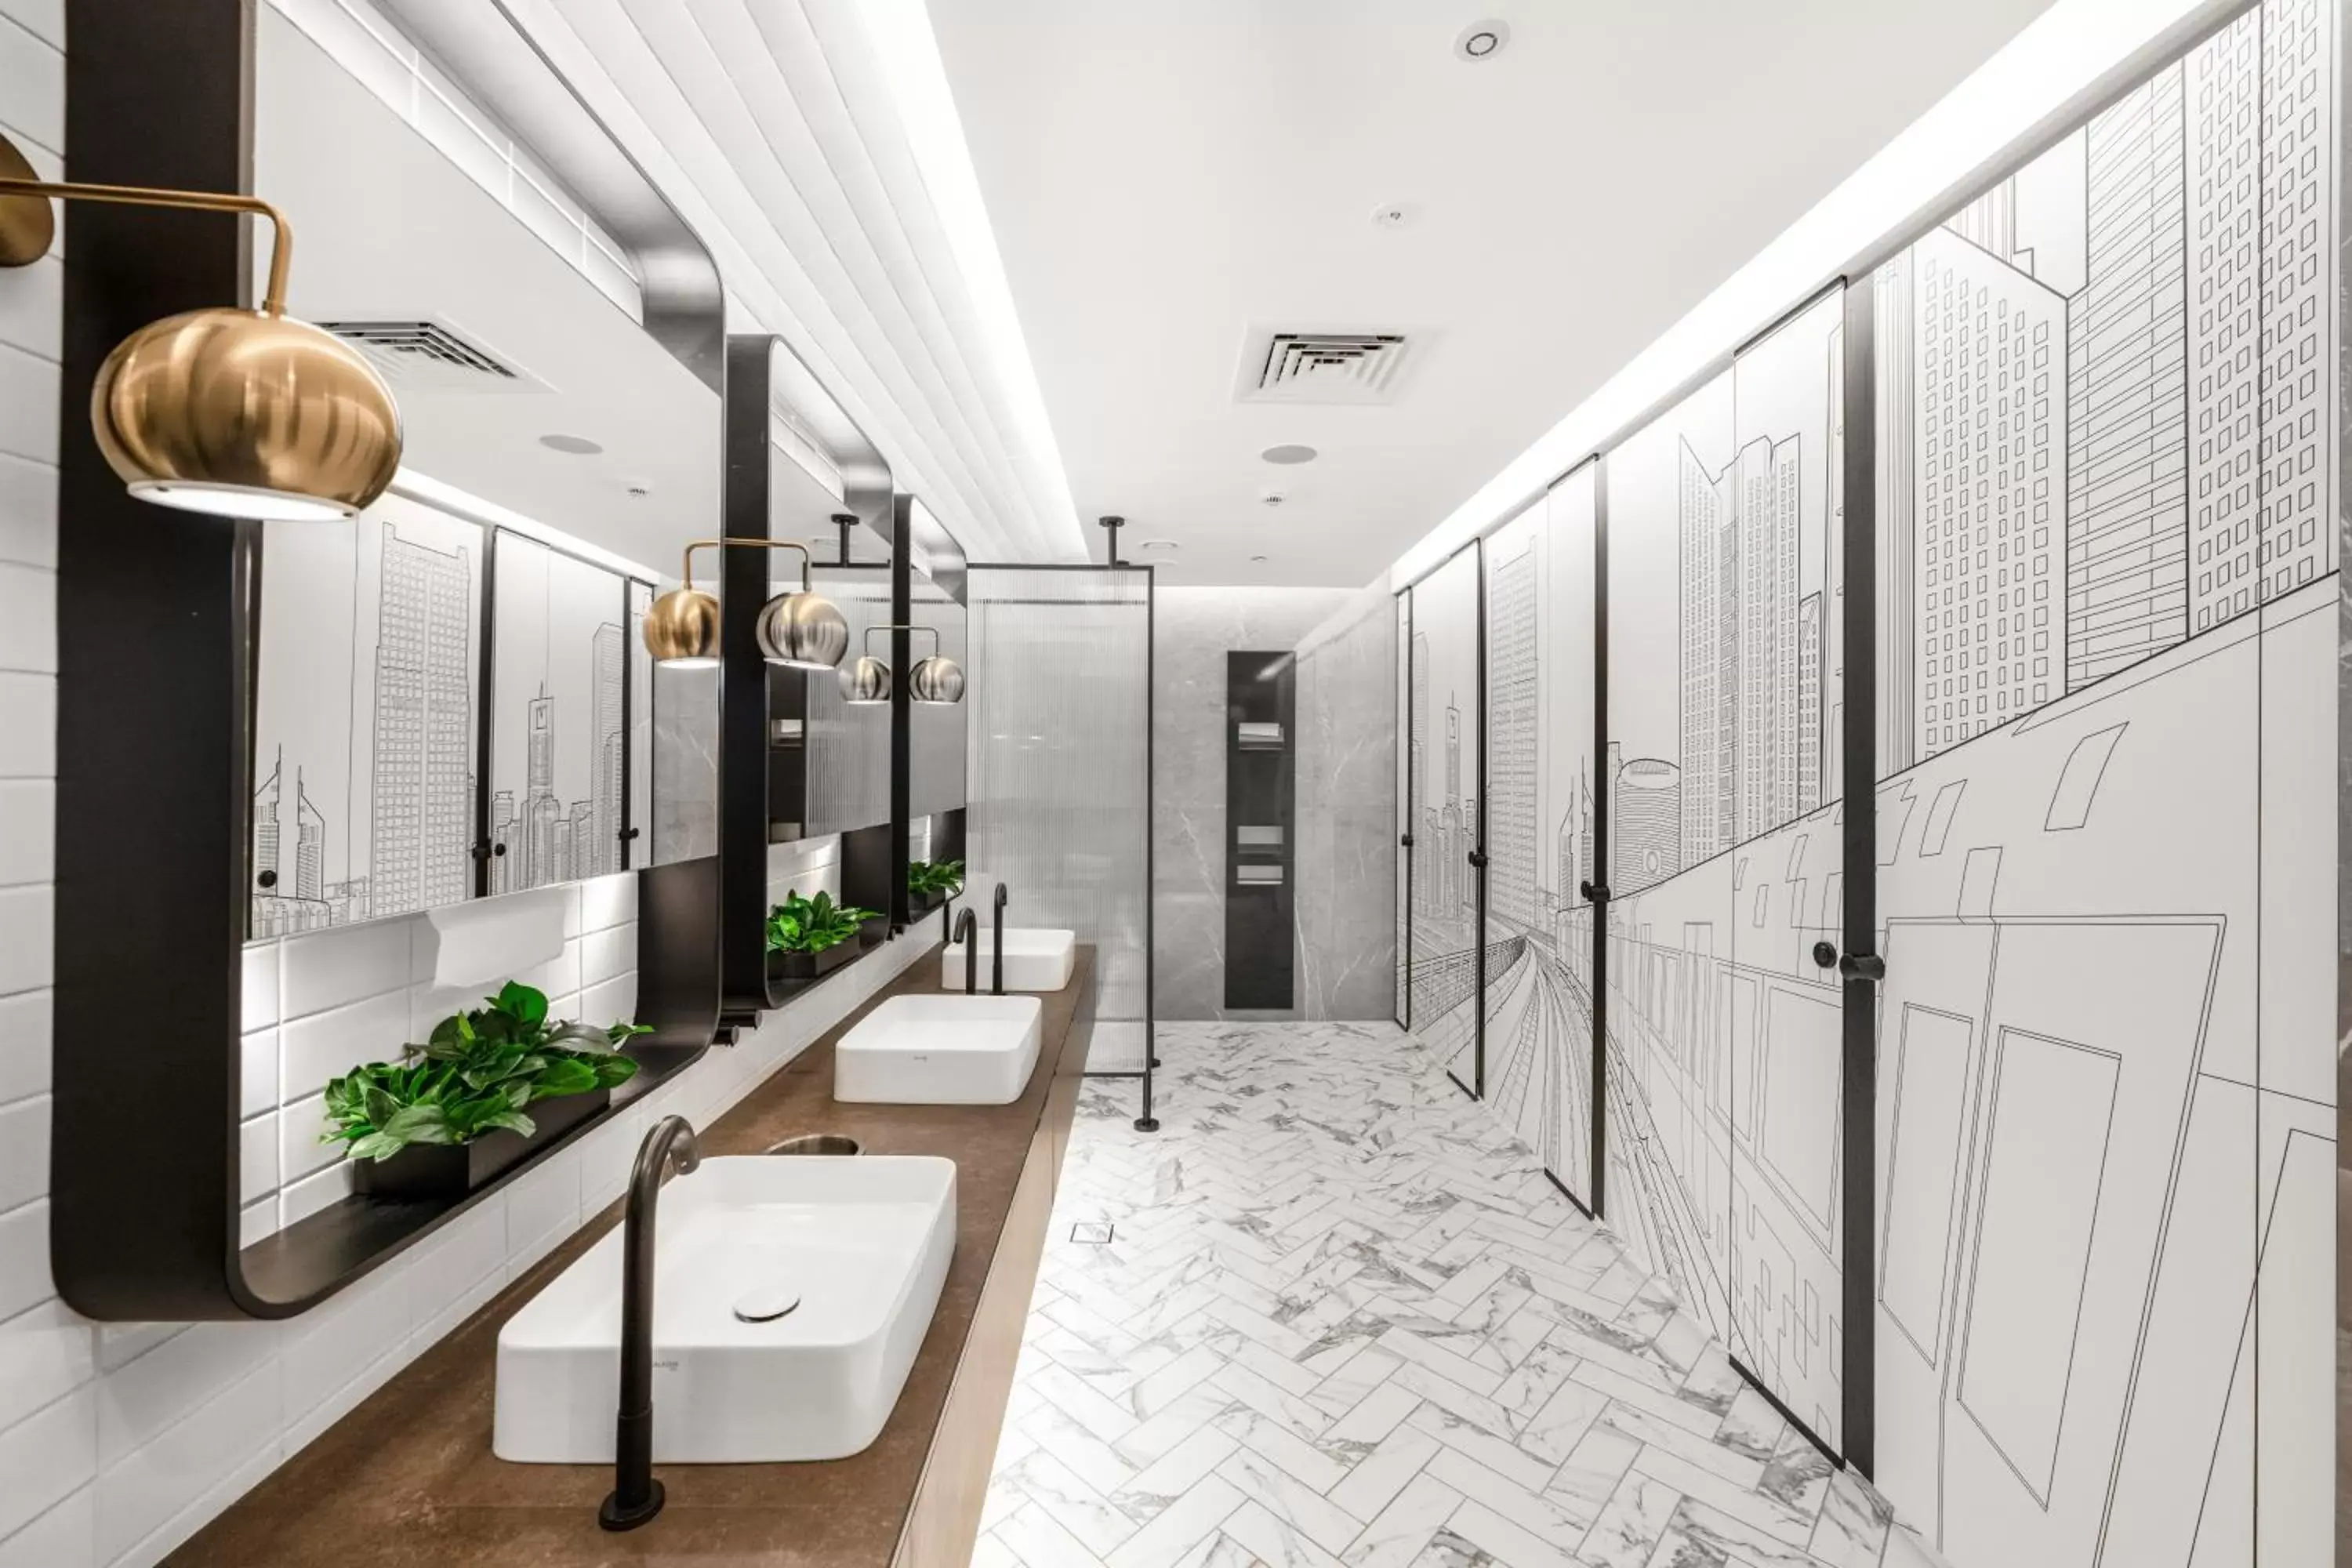 Area and facilities, Bathroom in Ecos Dubai Hotel at Al Furjan